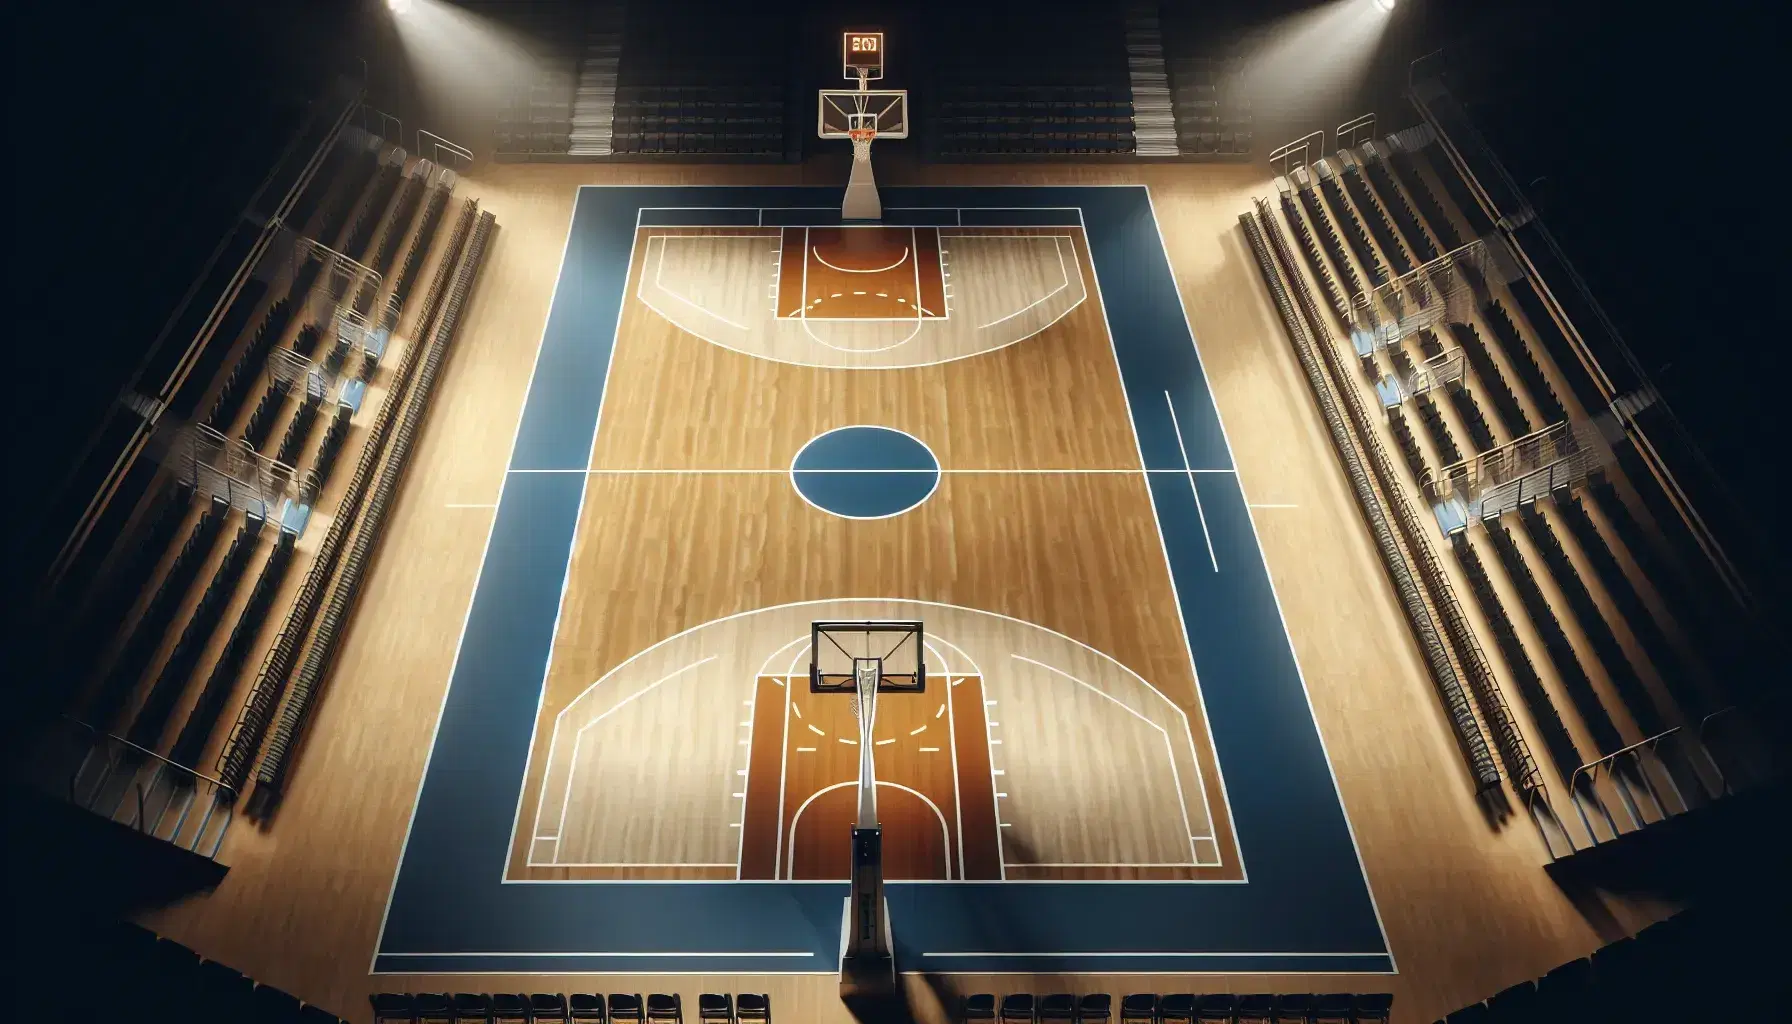 Vista aérea de una cancha de baloncesto profesional con suelo de madera clara, líneas blancas, aros naranjas y asientos azules retráctiles vacíos.